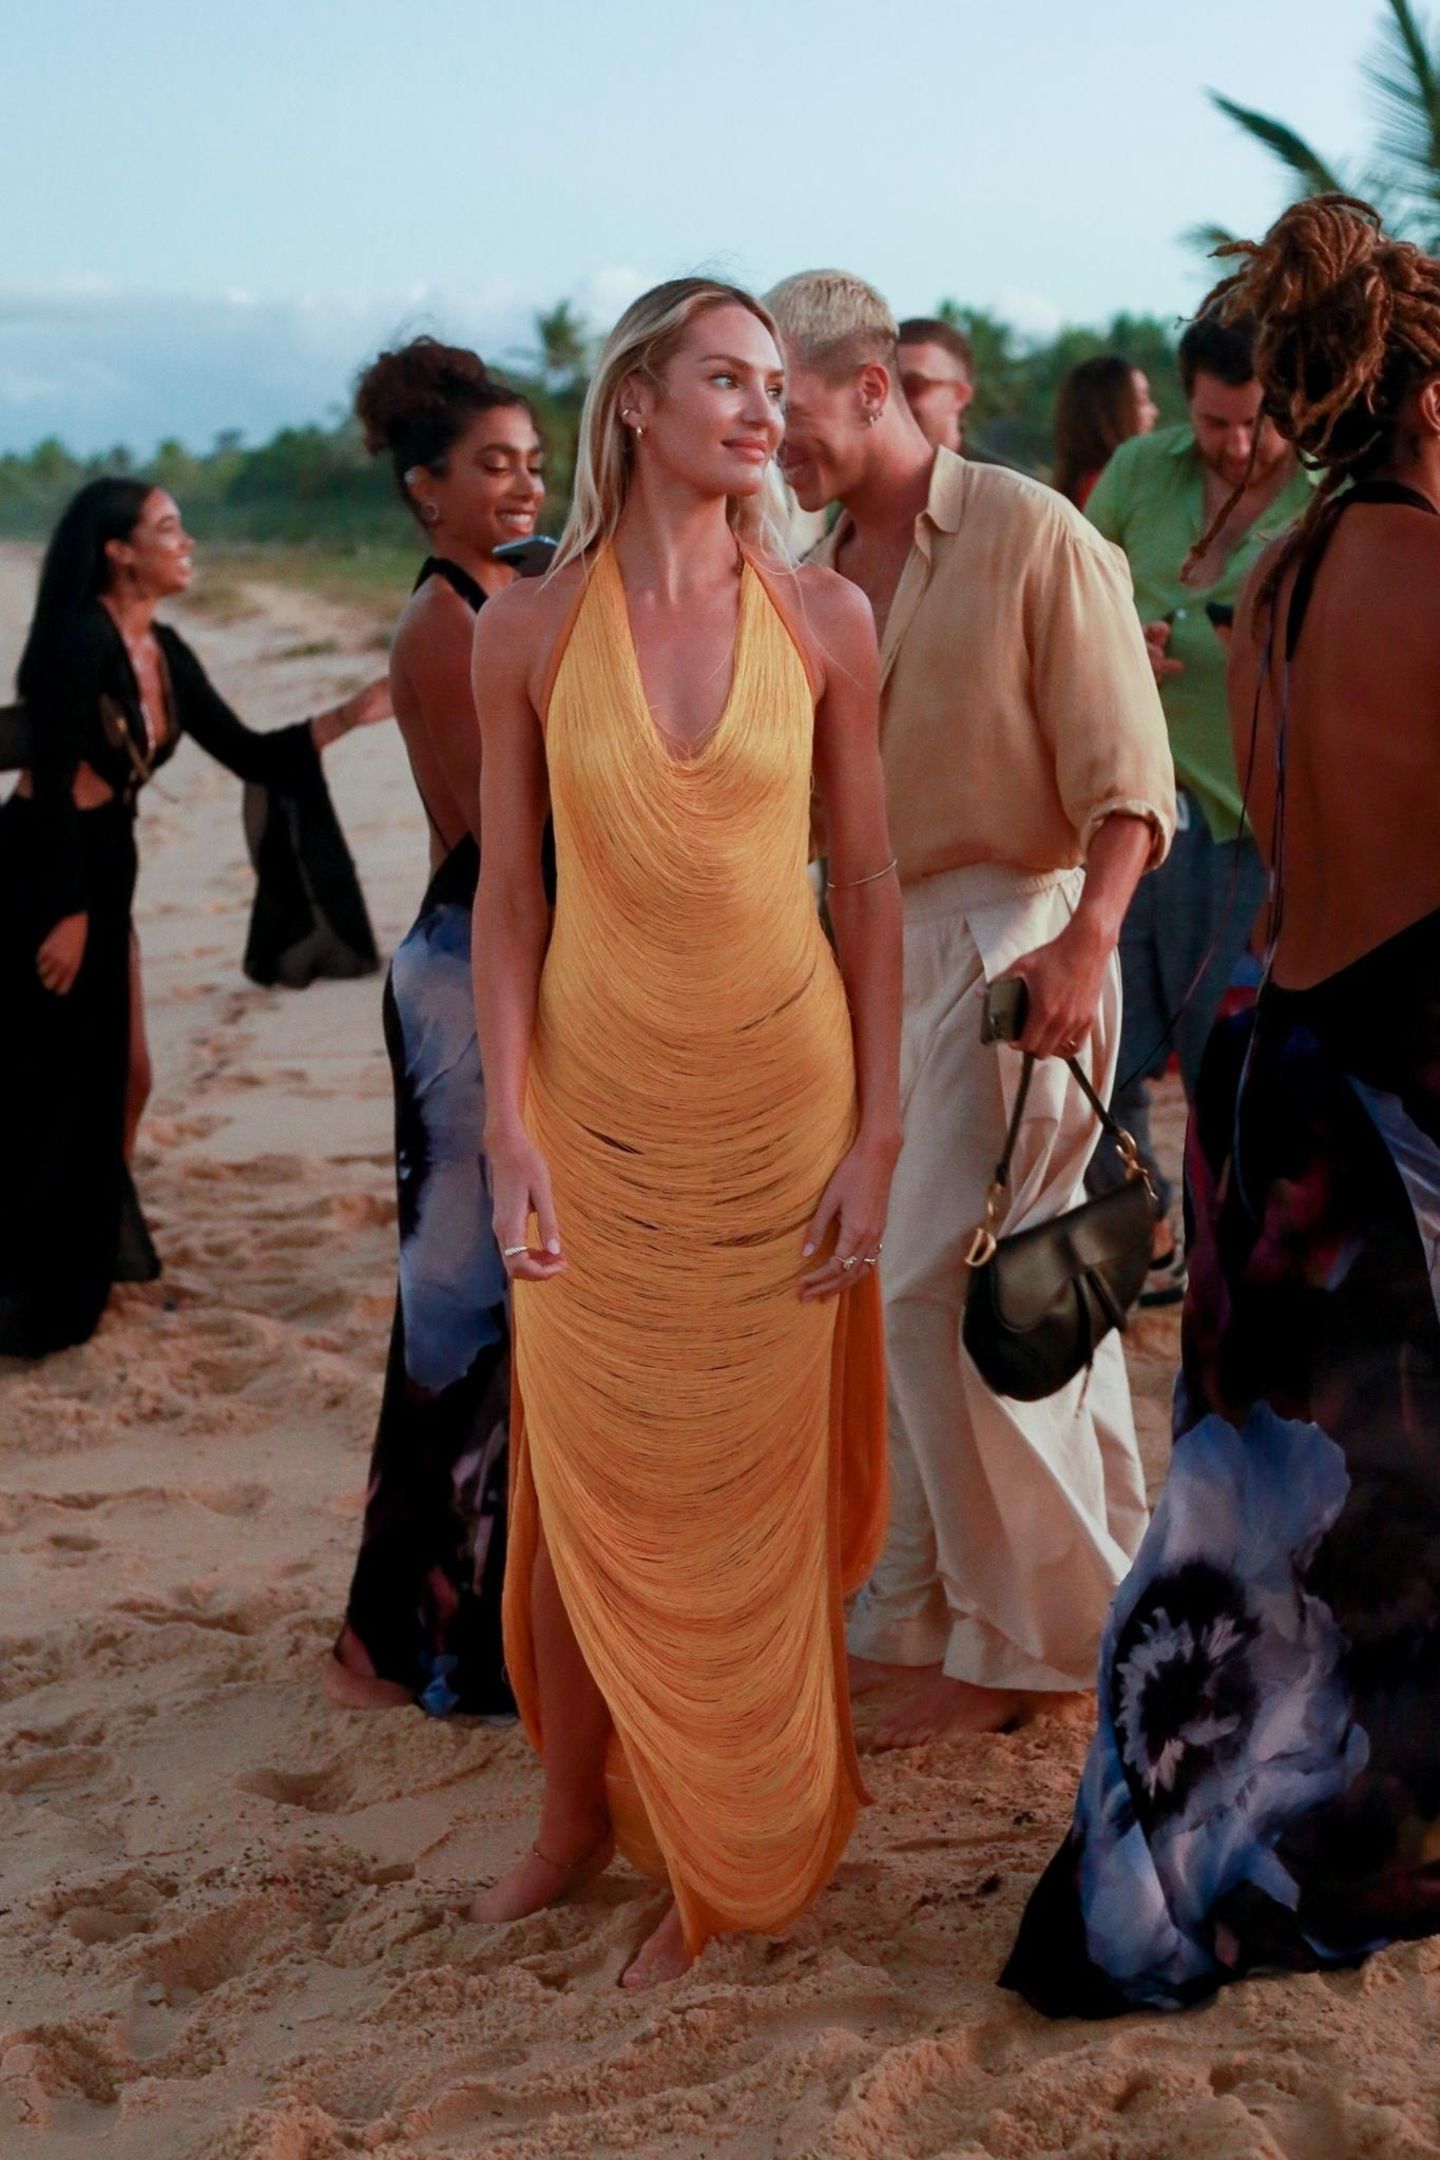 Seit Jahren legt Candice Swanepoel Wow-Auftritte auf dem Runway hin, doch auch bei der Hochzeit ihrer Model-Freundin Lais Ribeiro ist sie im gelben Fadenkleid der absolute Hingucker. Die Fäden, die locker ihre Silhouette umspielen, schimmern im warmen Sonnenuntergang – das perfekte Kleid für eine Hochzeit am Strand. 